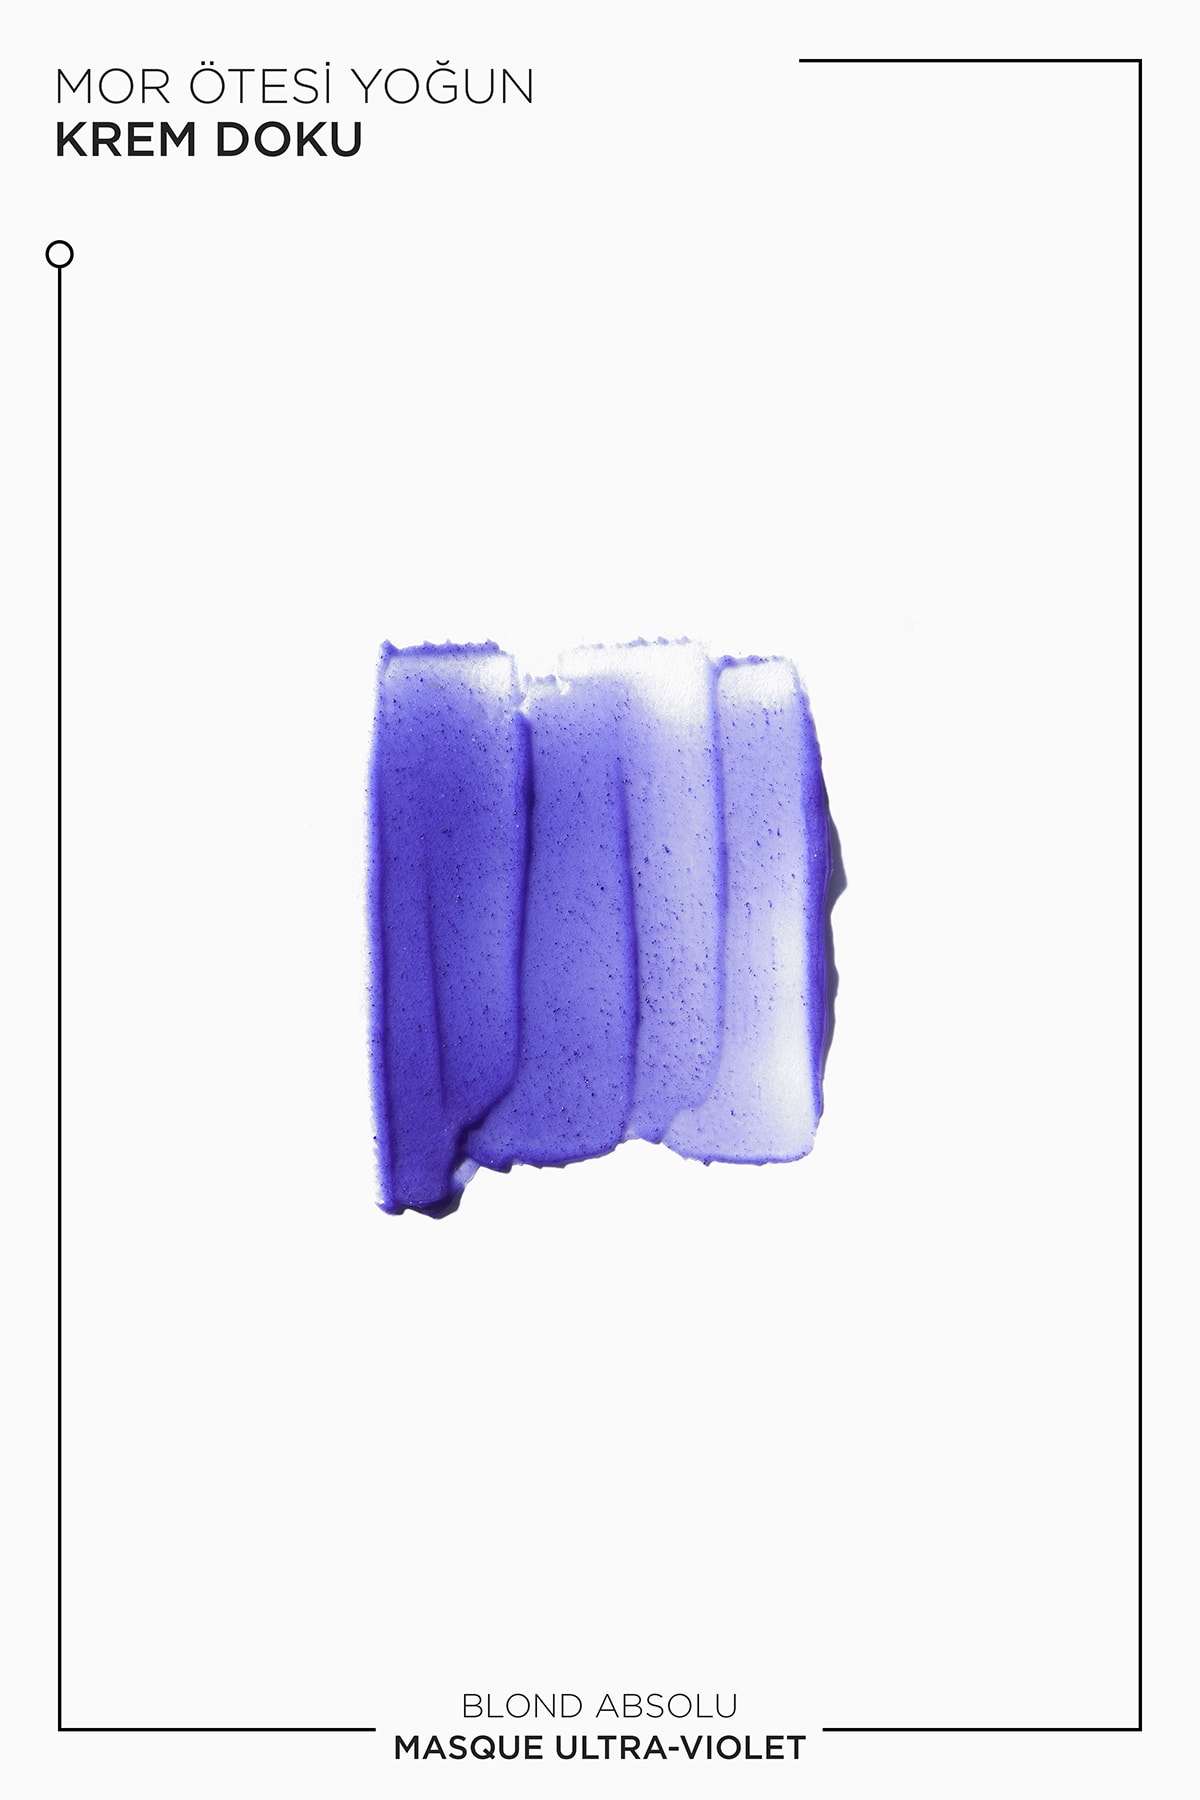 ماسک نقره ای_بنفش بلوند ابسولو اولترا Absolu Ultra - Violet برای موهای رنگ شده و خاکستری 200 میل کراستاس Kerastase